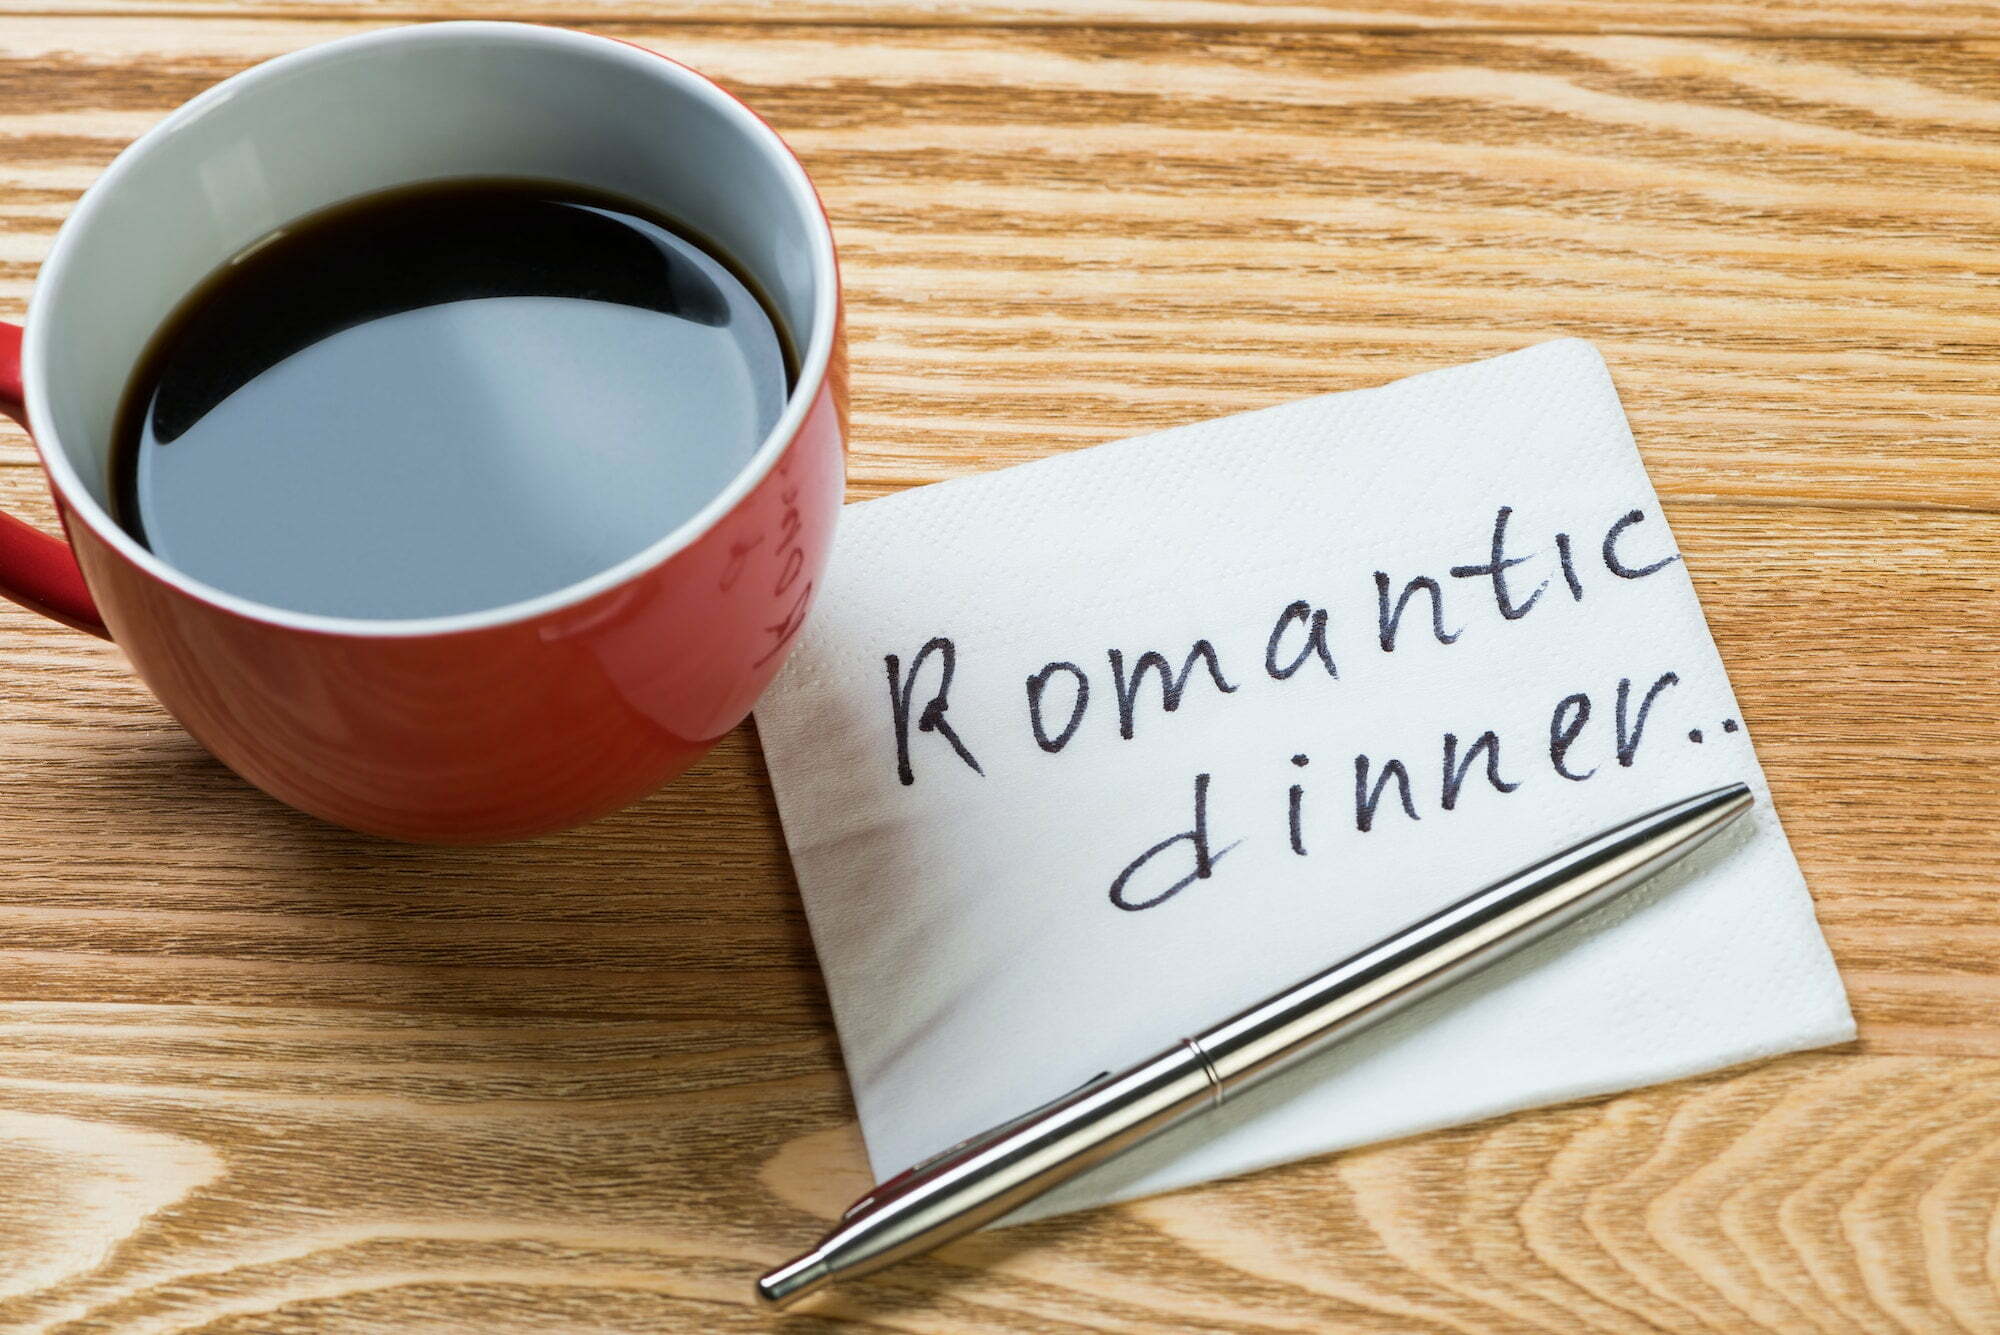 Romantic message written on napkin